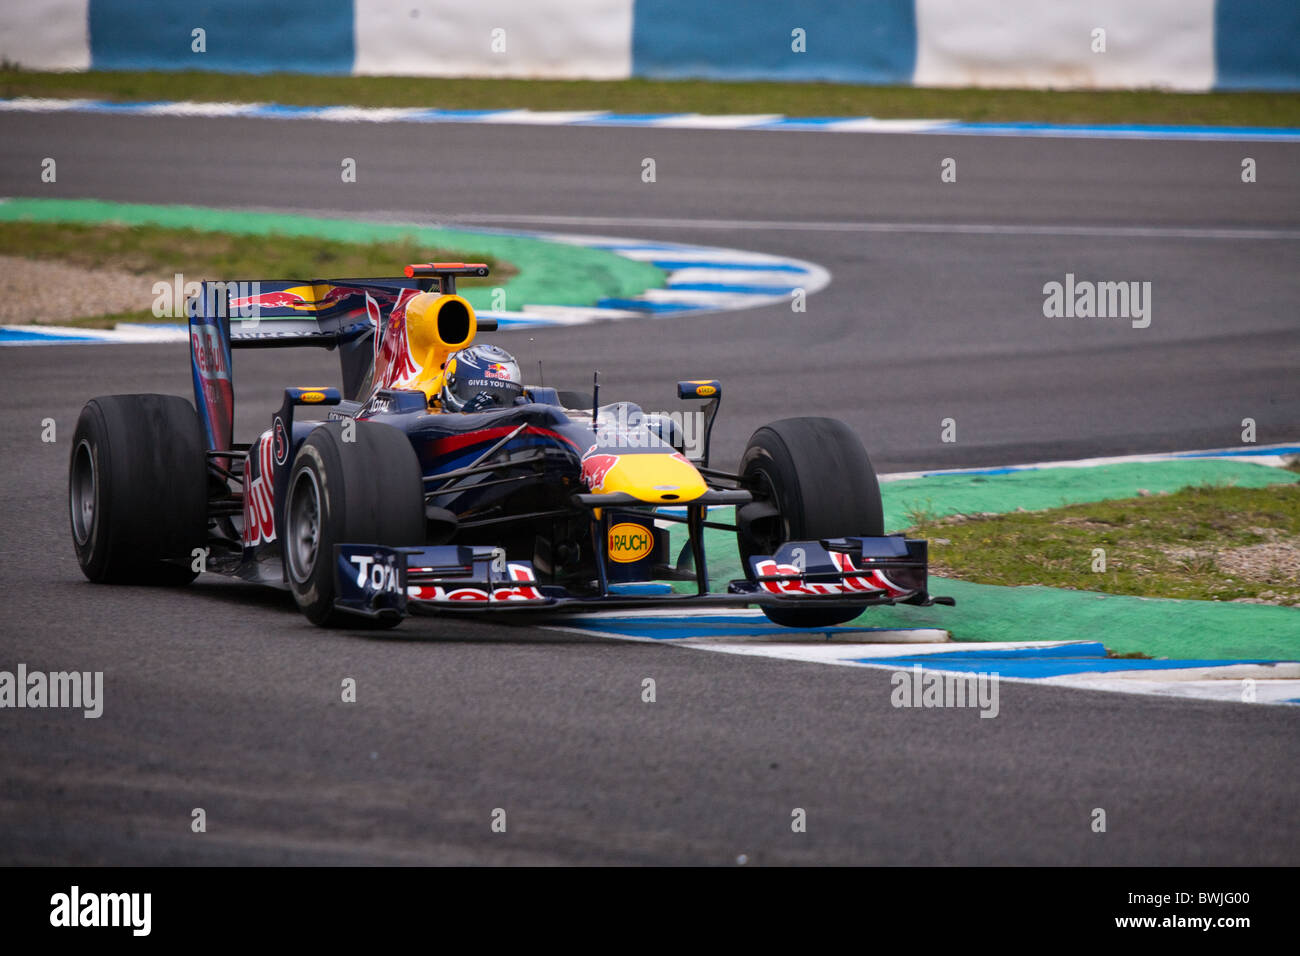 Sebastian Vettel al 2010 Jerez pratica nella sua Red Bull Renault, Formula 1 auto, lasciando la chicane. Foto Stock